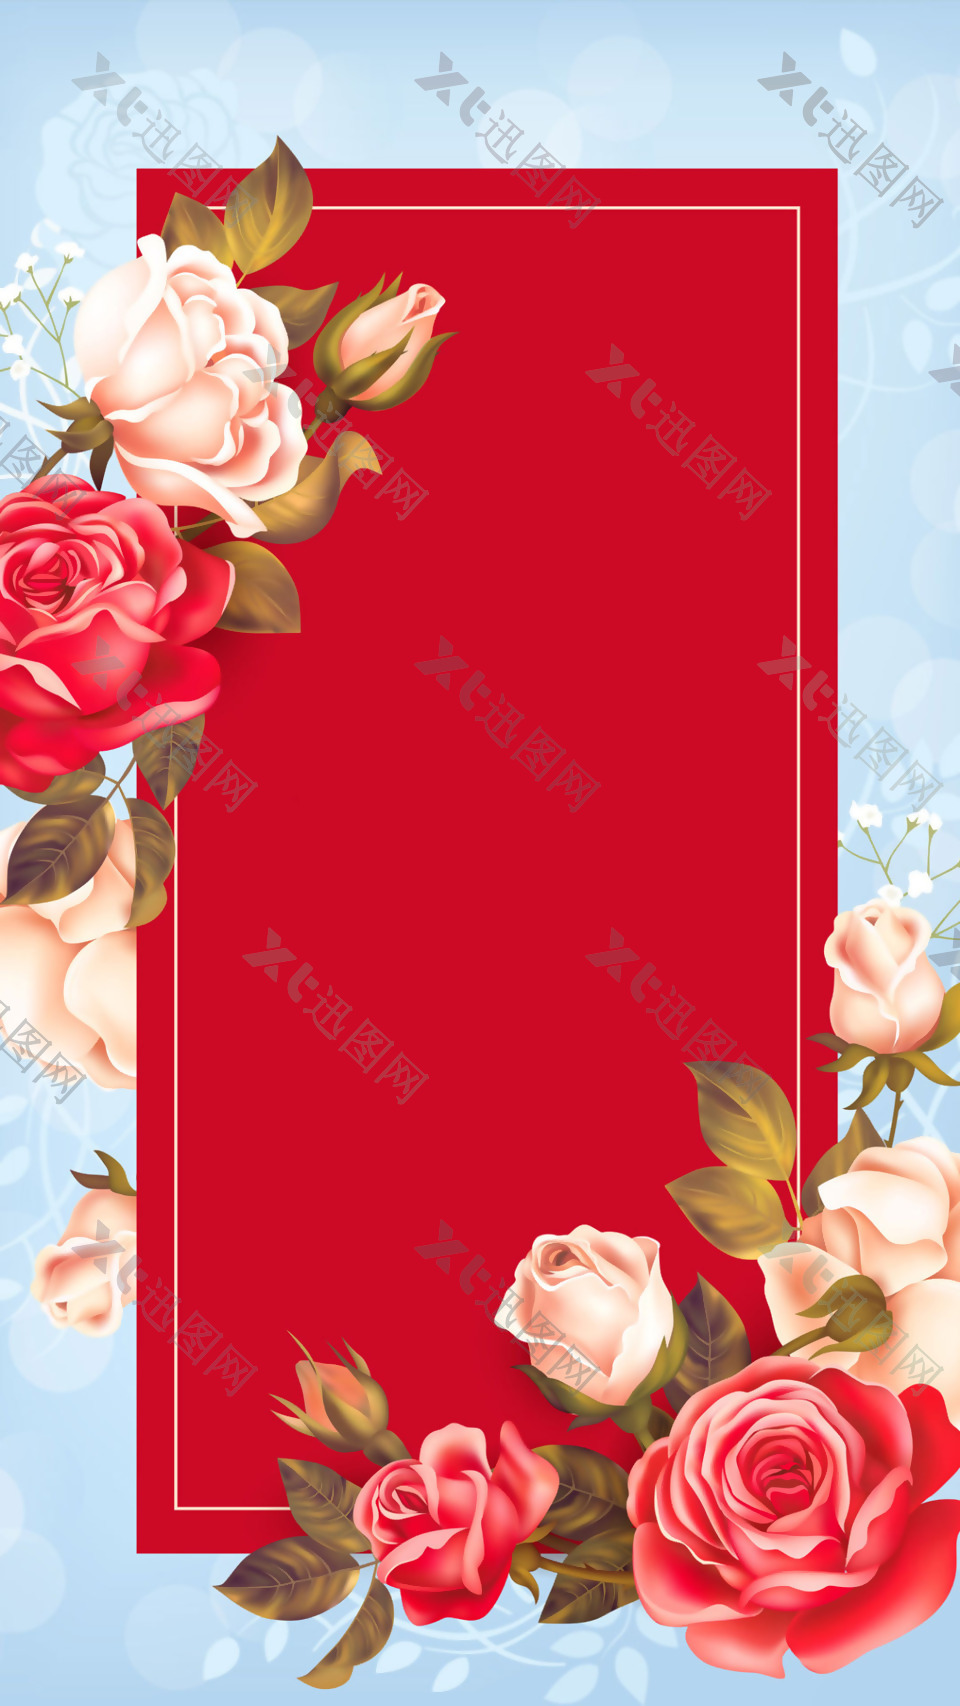 唯美红色花朵H5背景素材